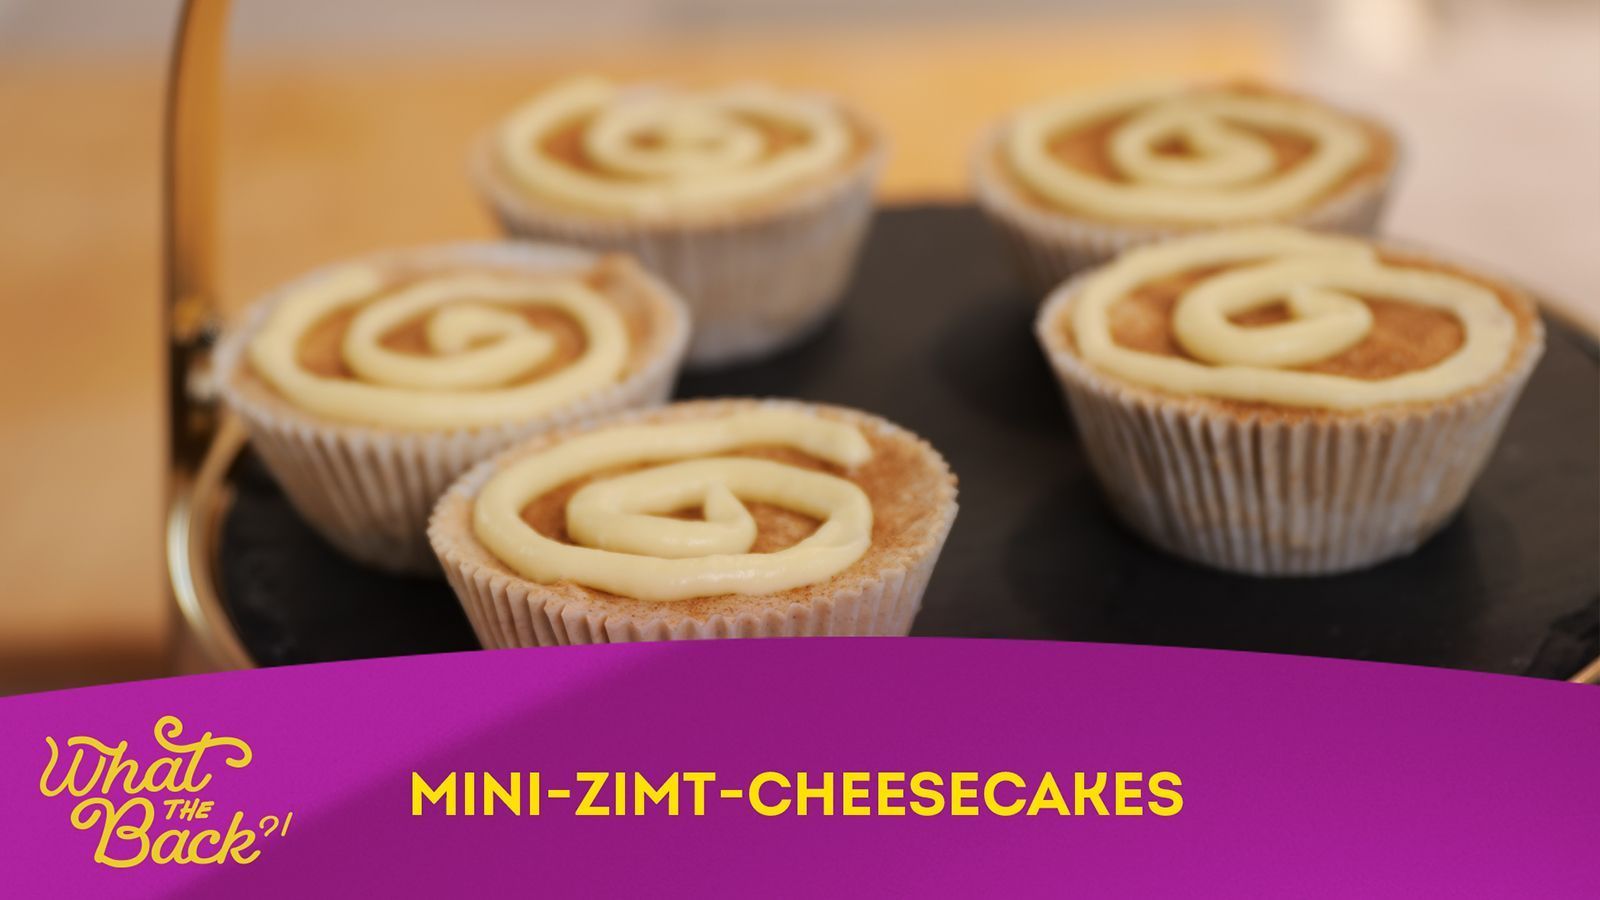 Mini-Zimt-Cheesecakes